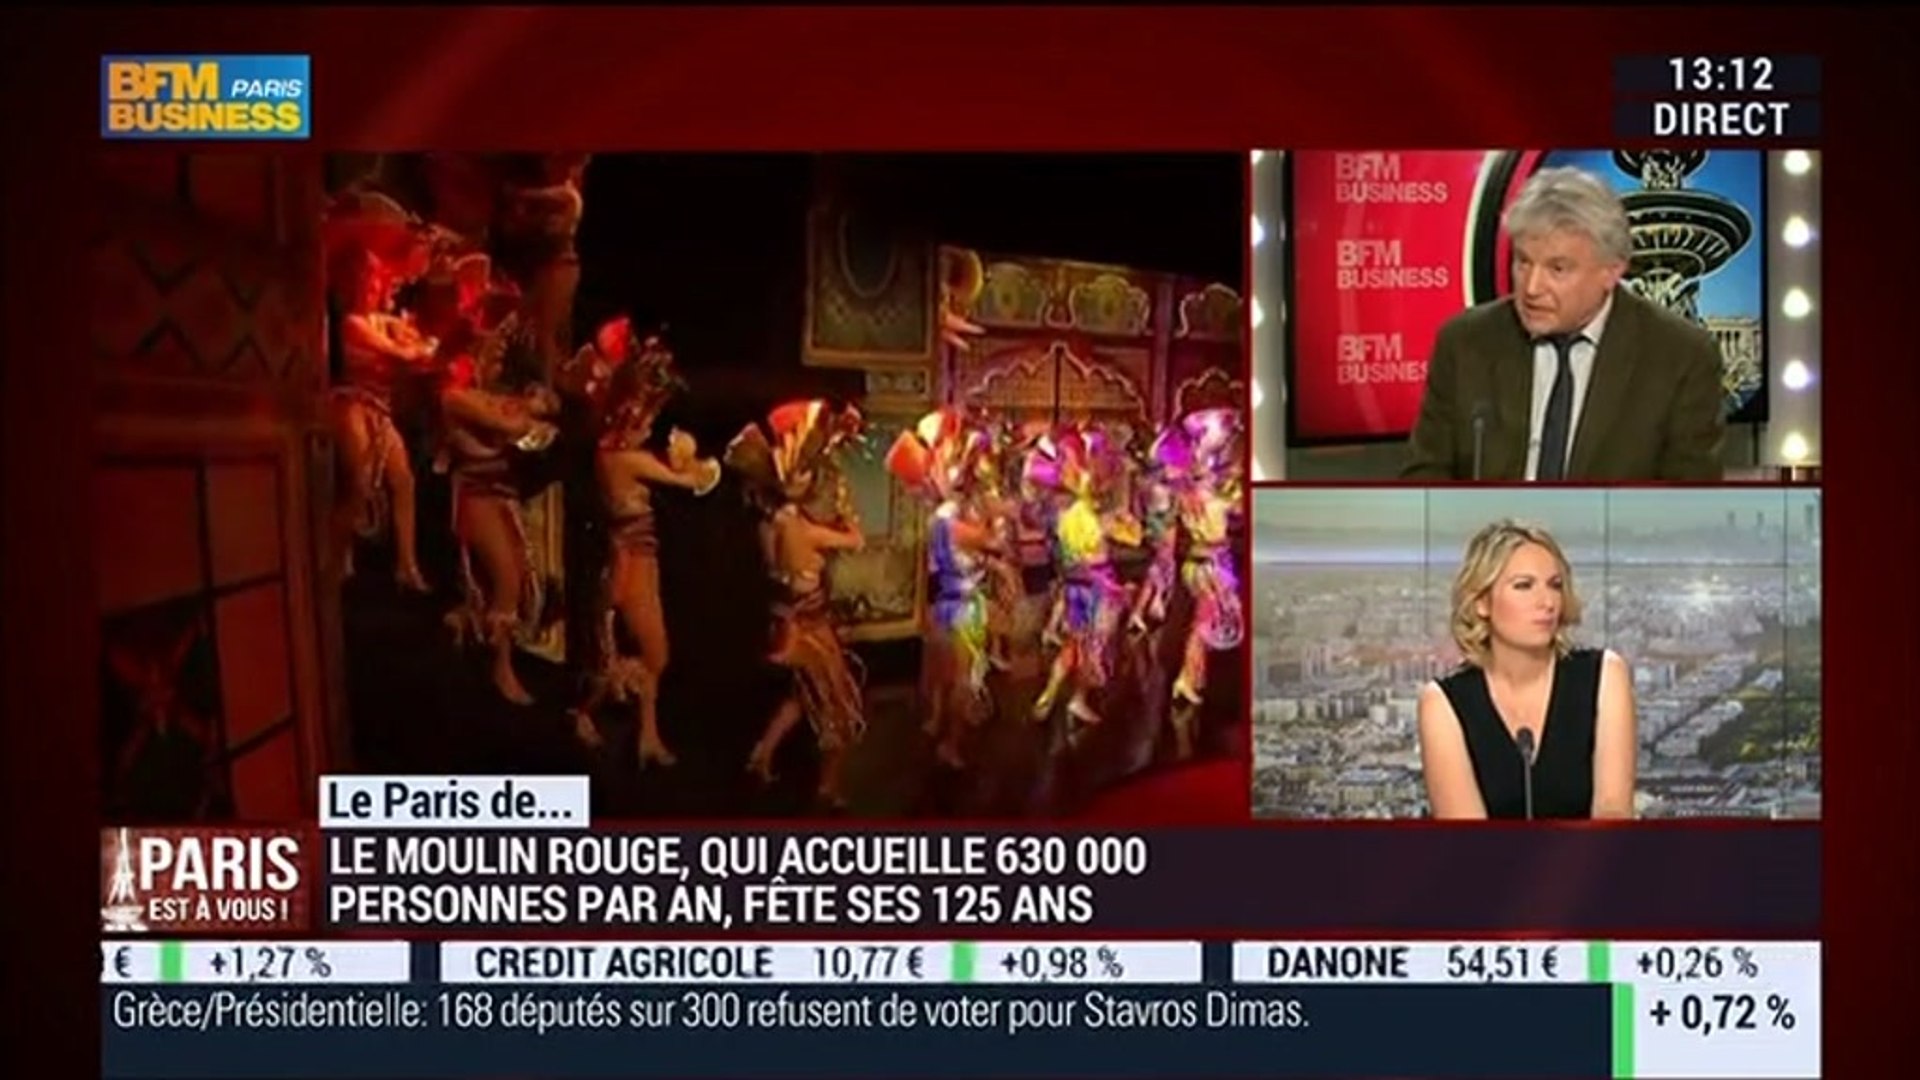 Le Paris de Jean-Jacques Clérico, Moulin Rouge – 23/12 - Vidéo Dailymotion